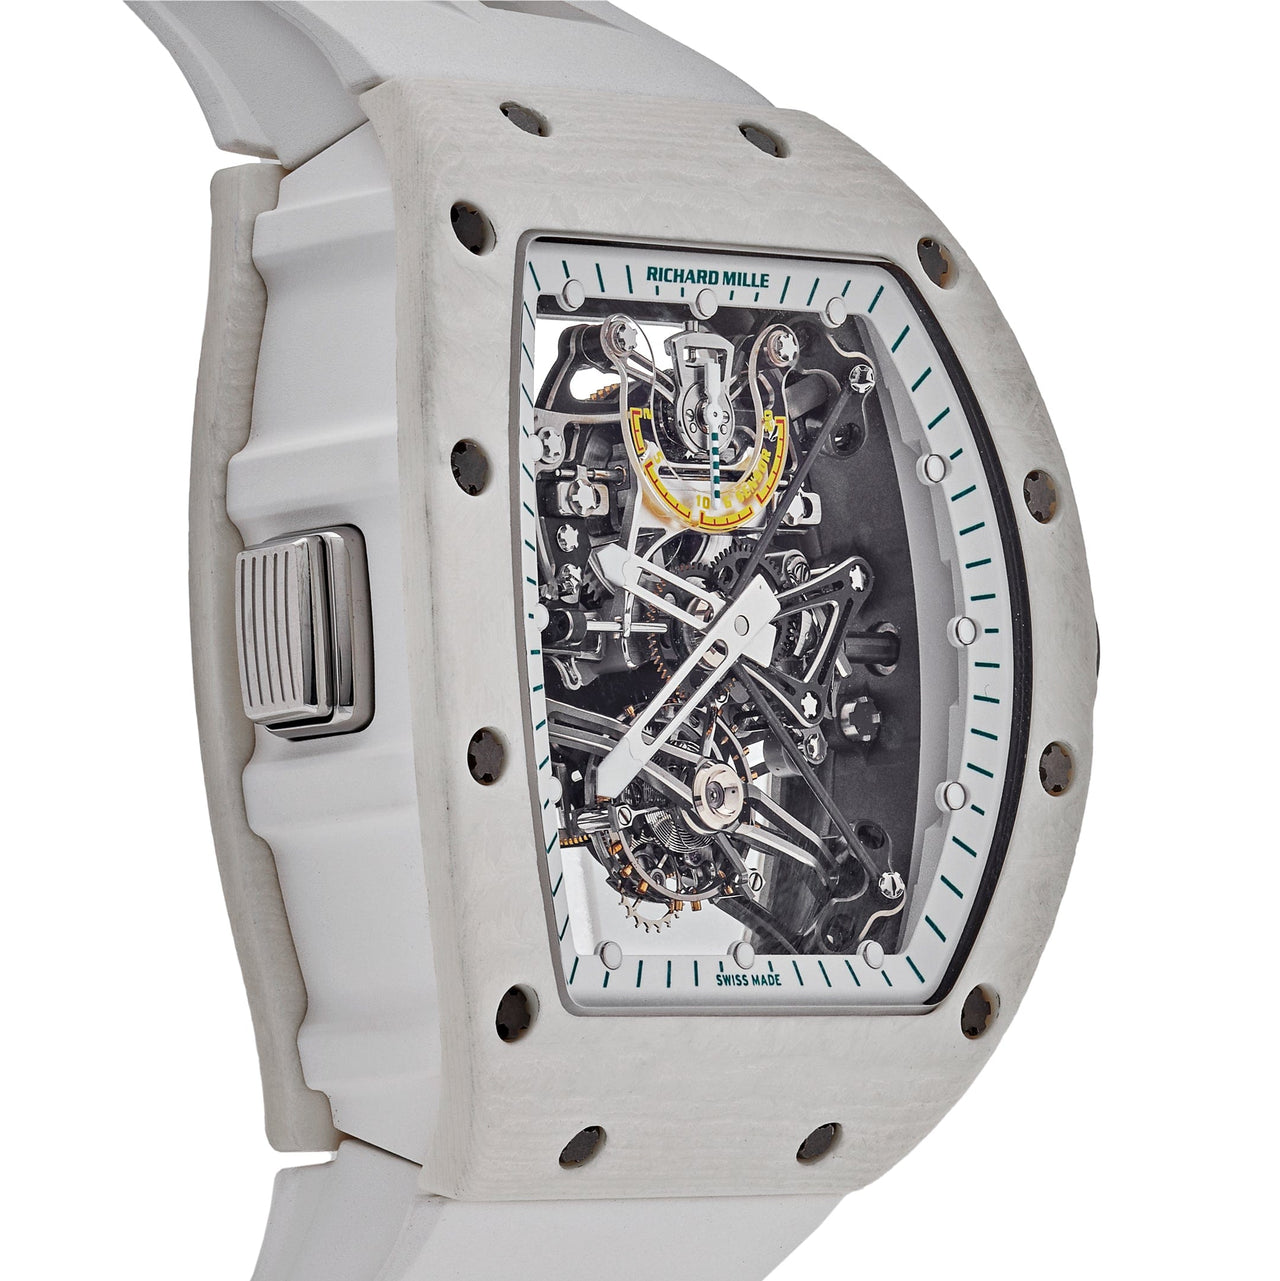 Luxury Watch Richard Mille Tourbillon RM 38-01 'Bubba Watson White Quartz TPT' Titanium Limited Edition of 50 Pieces Wrist Aficionado